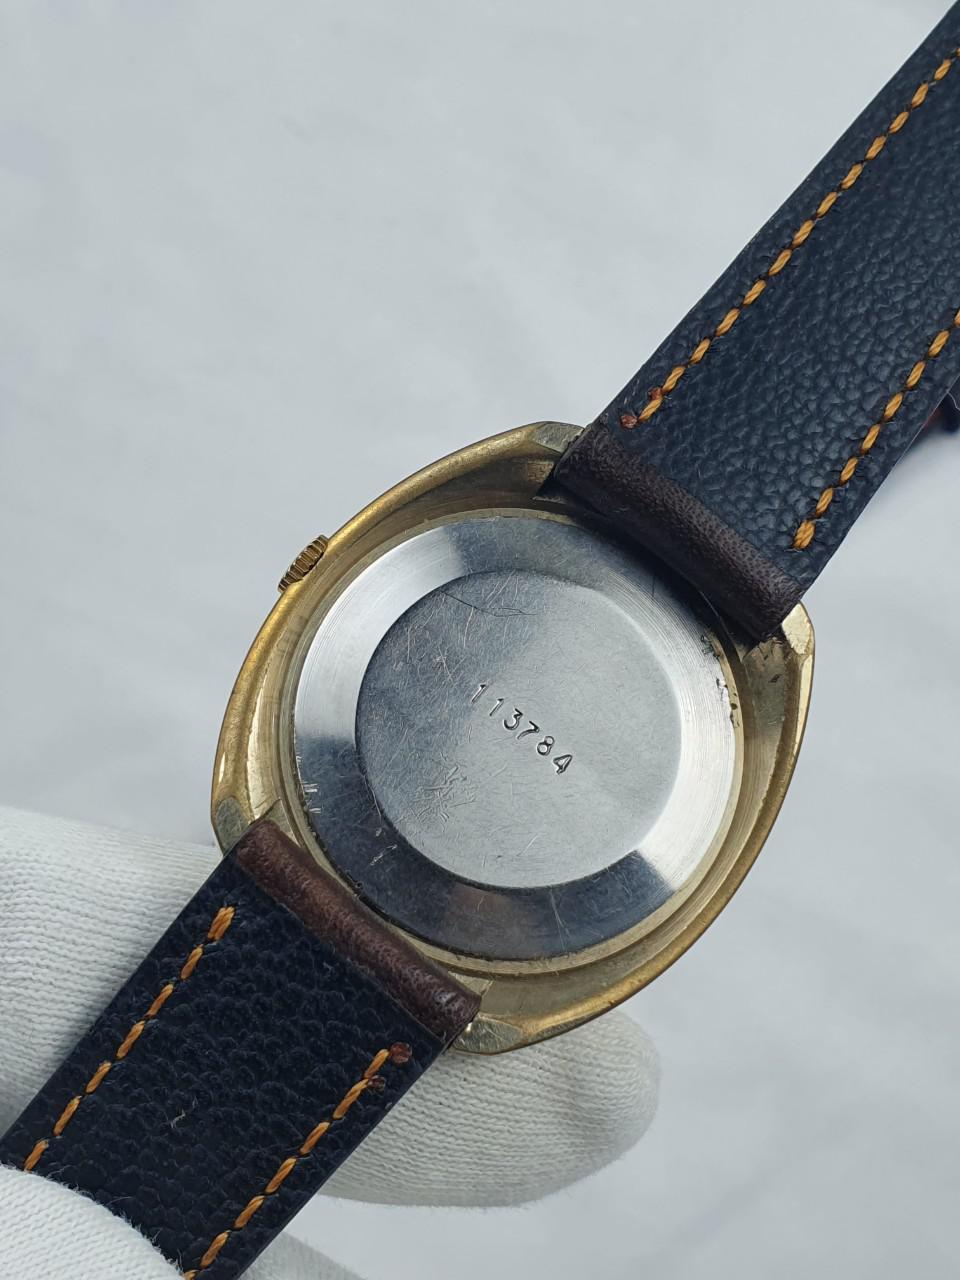 Đồng hồ Vostok hoa văn cổ điển siêu hiếm